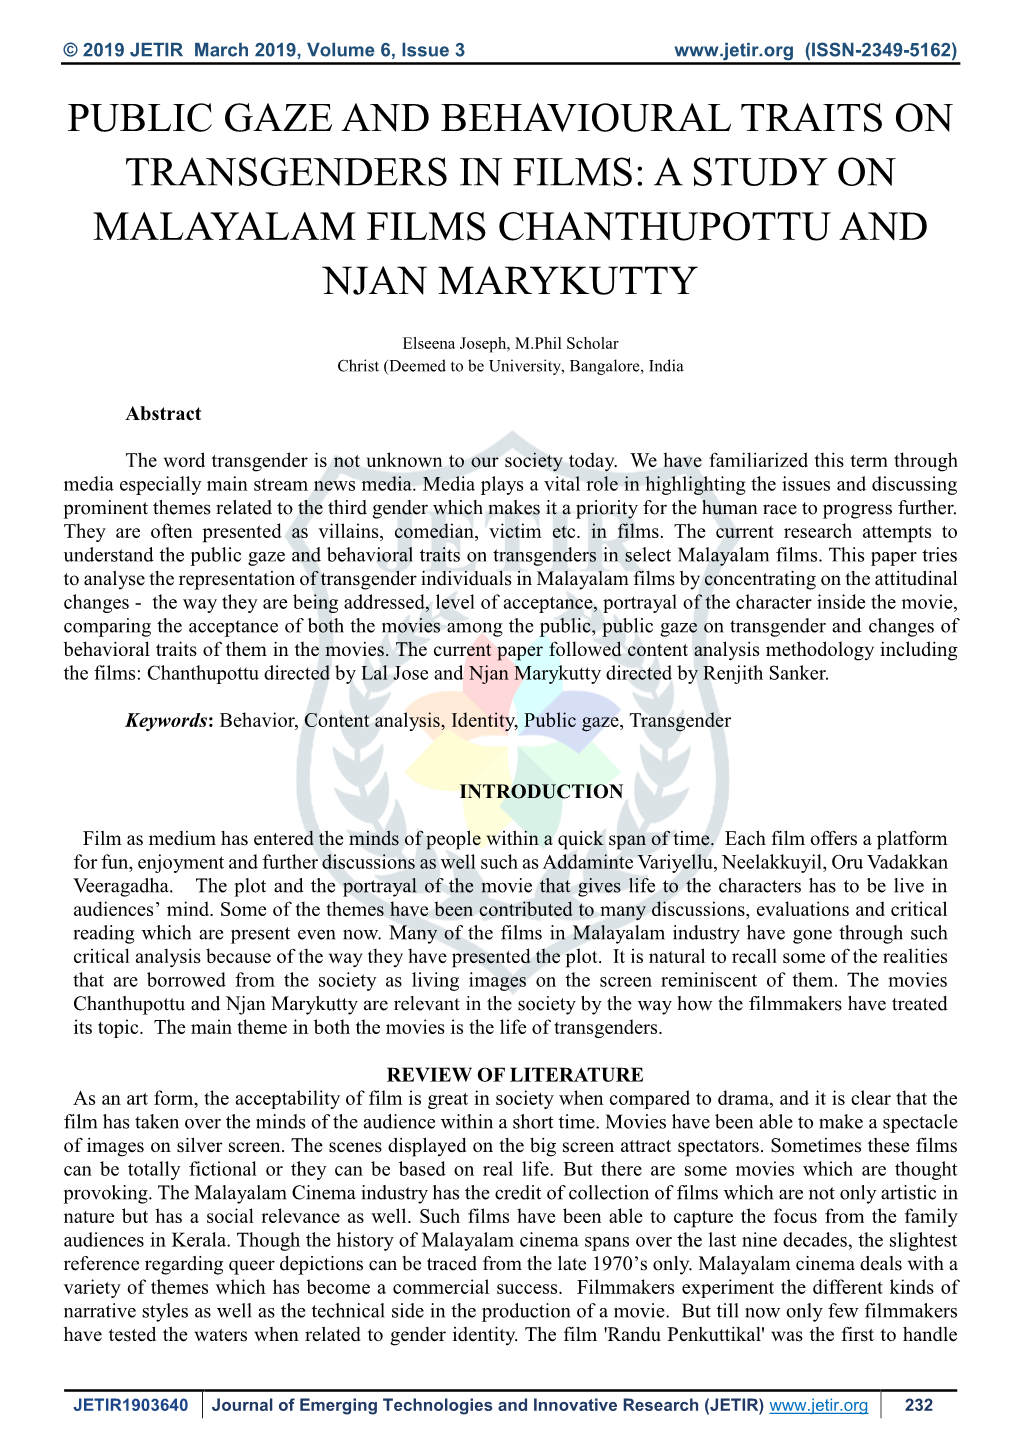 A Study on Malayalam Films Chanthupottu and Njan Marykutty